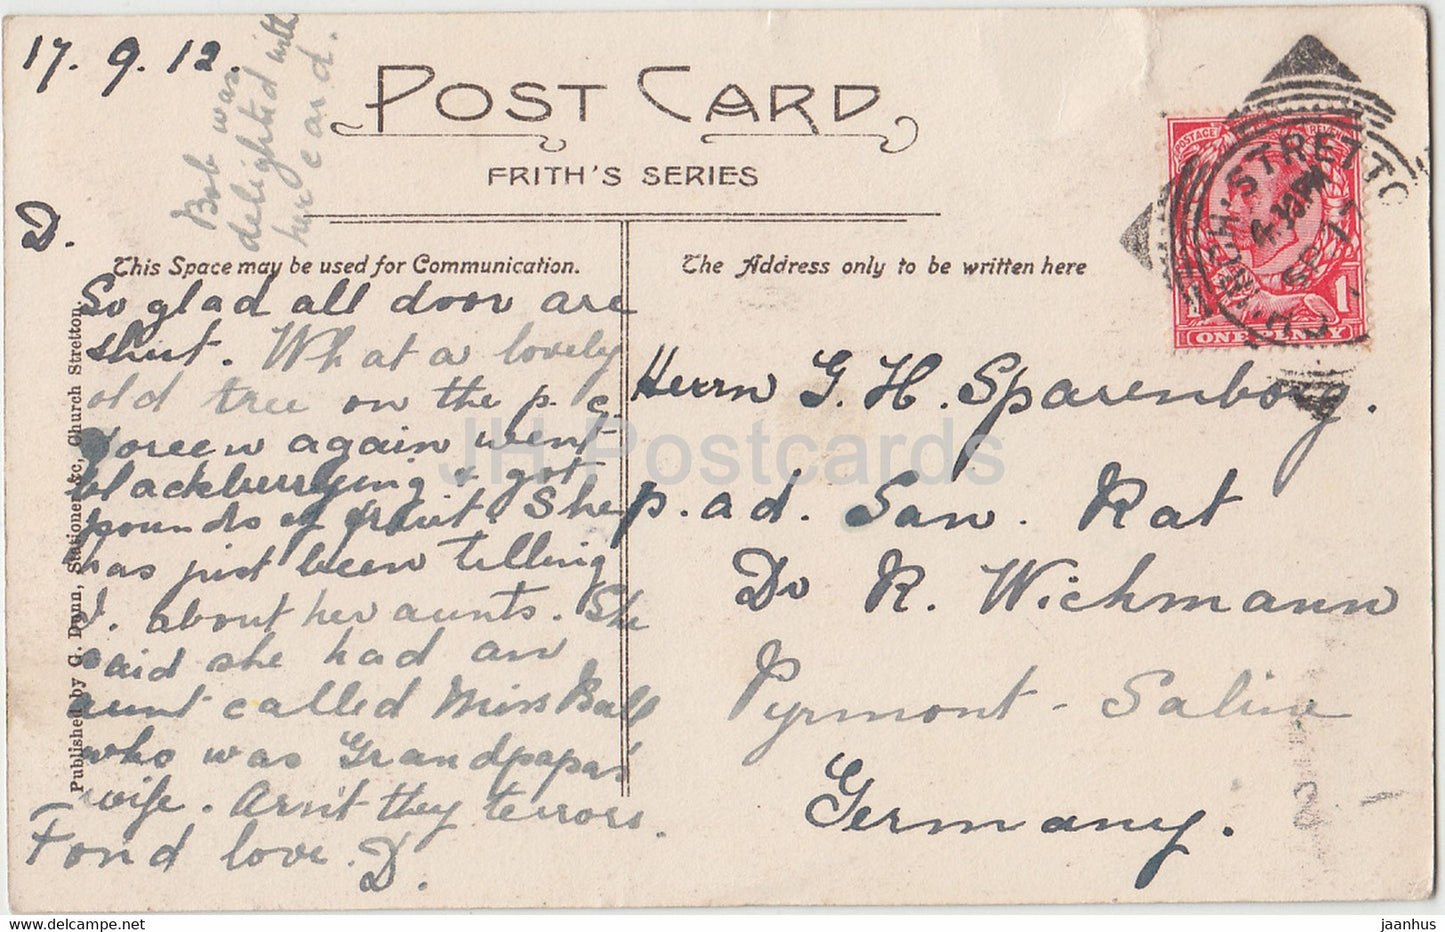 Church Stretton - Longmynd Hotel & Caradoc - old postcard - England - 1912 - United Kingdom - used